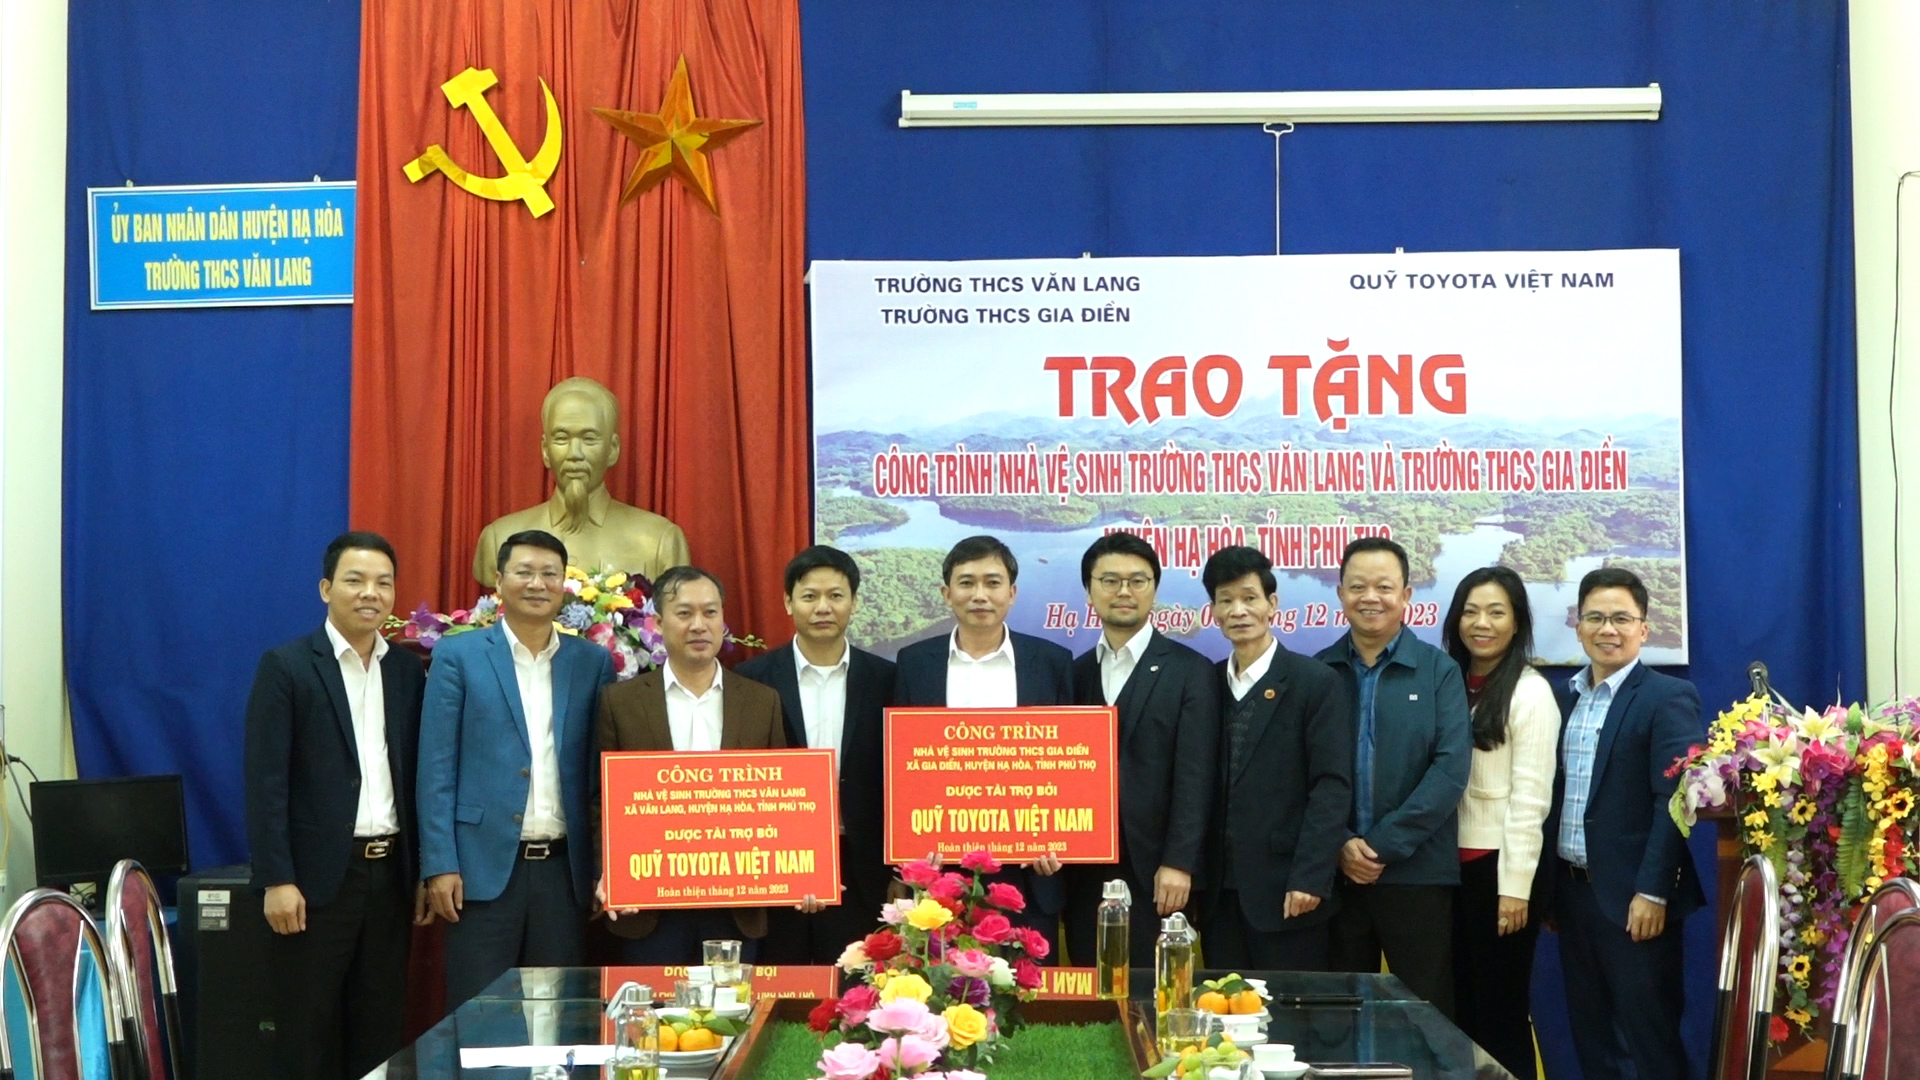 Quỹ Toyota Việt Nam bàn giao công trình nhà vệ sinh cho học sinh tại Hạ Hòa